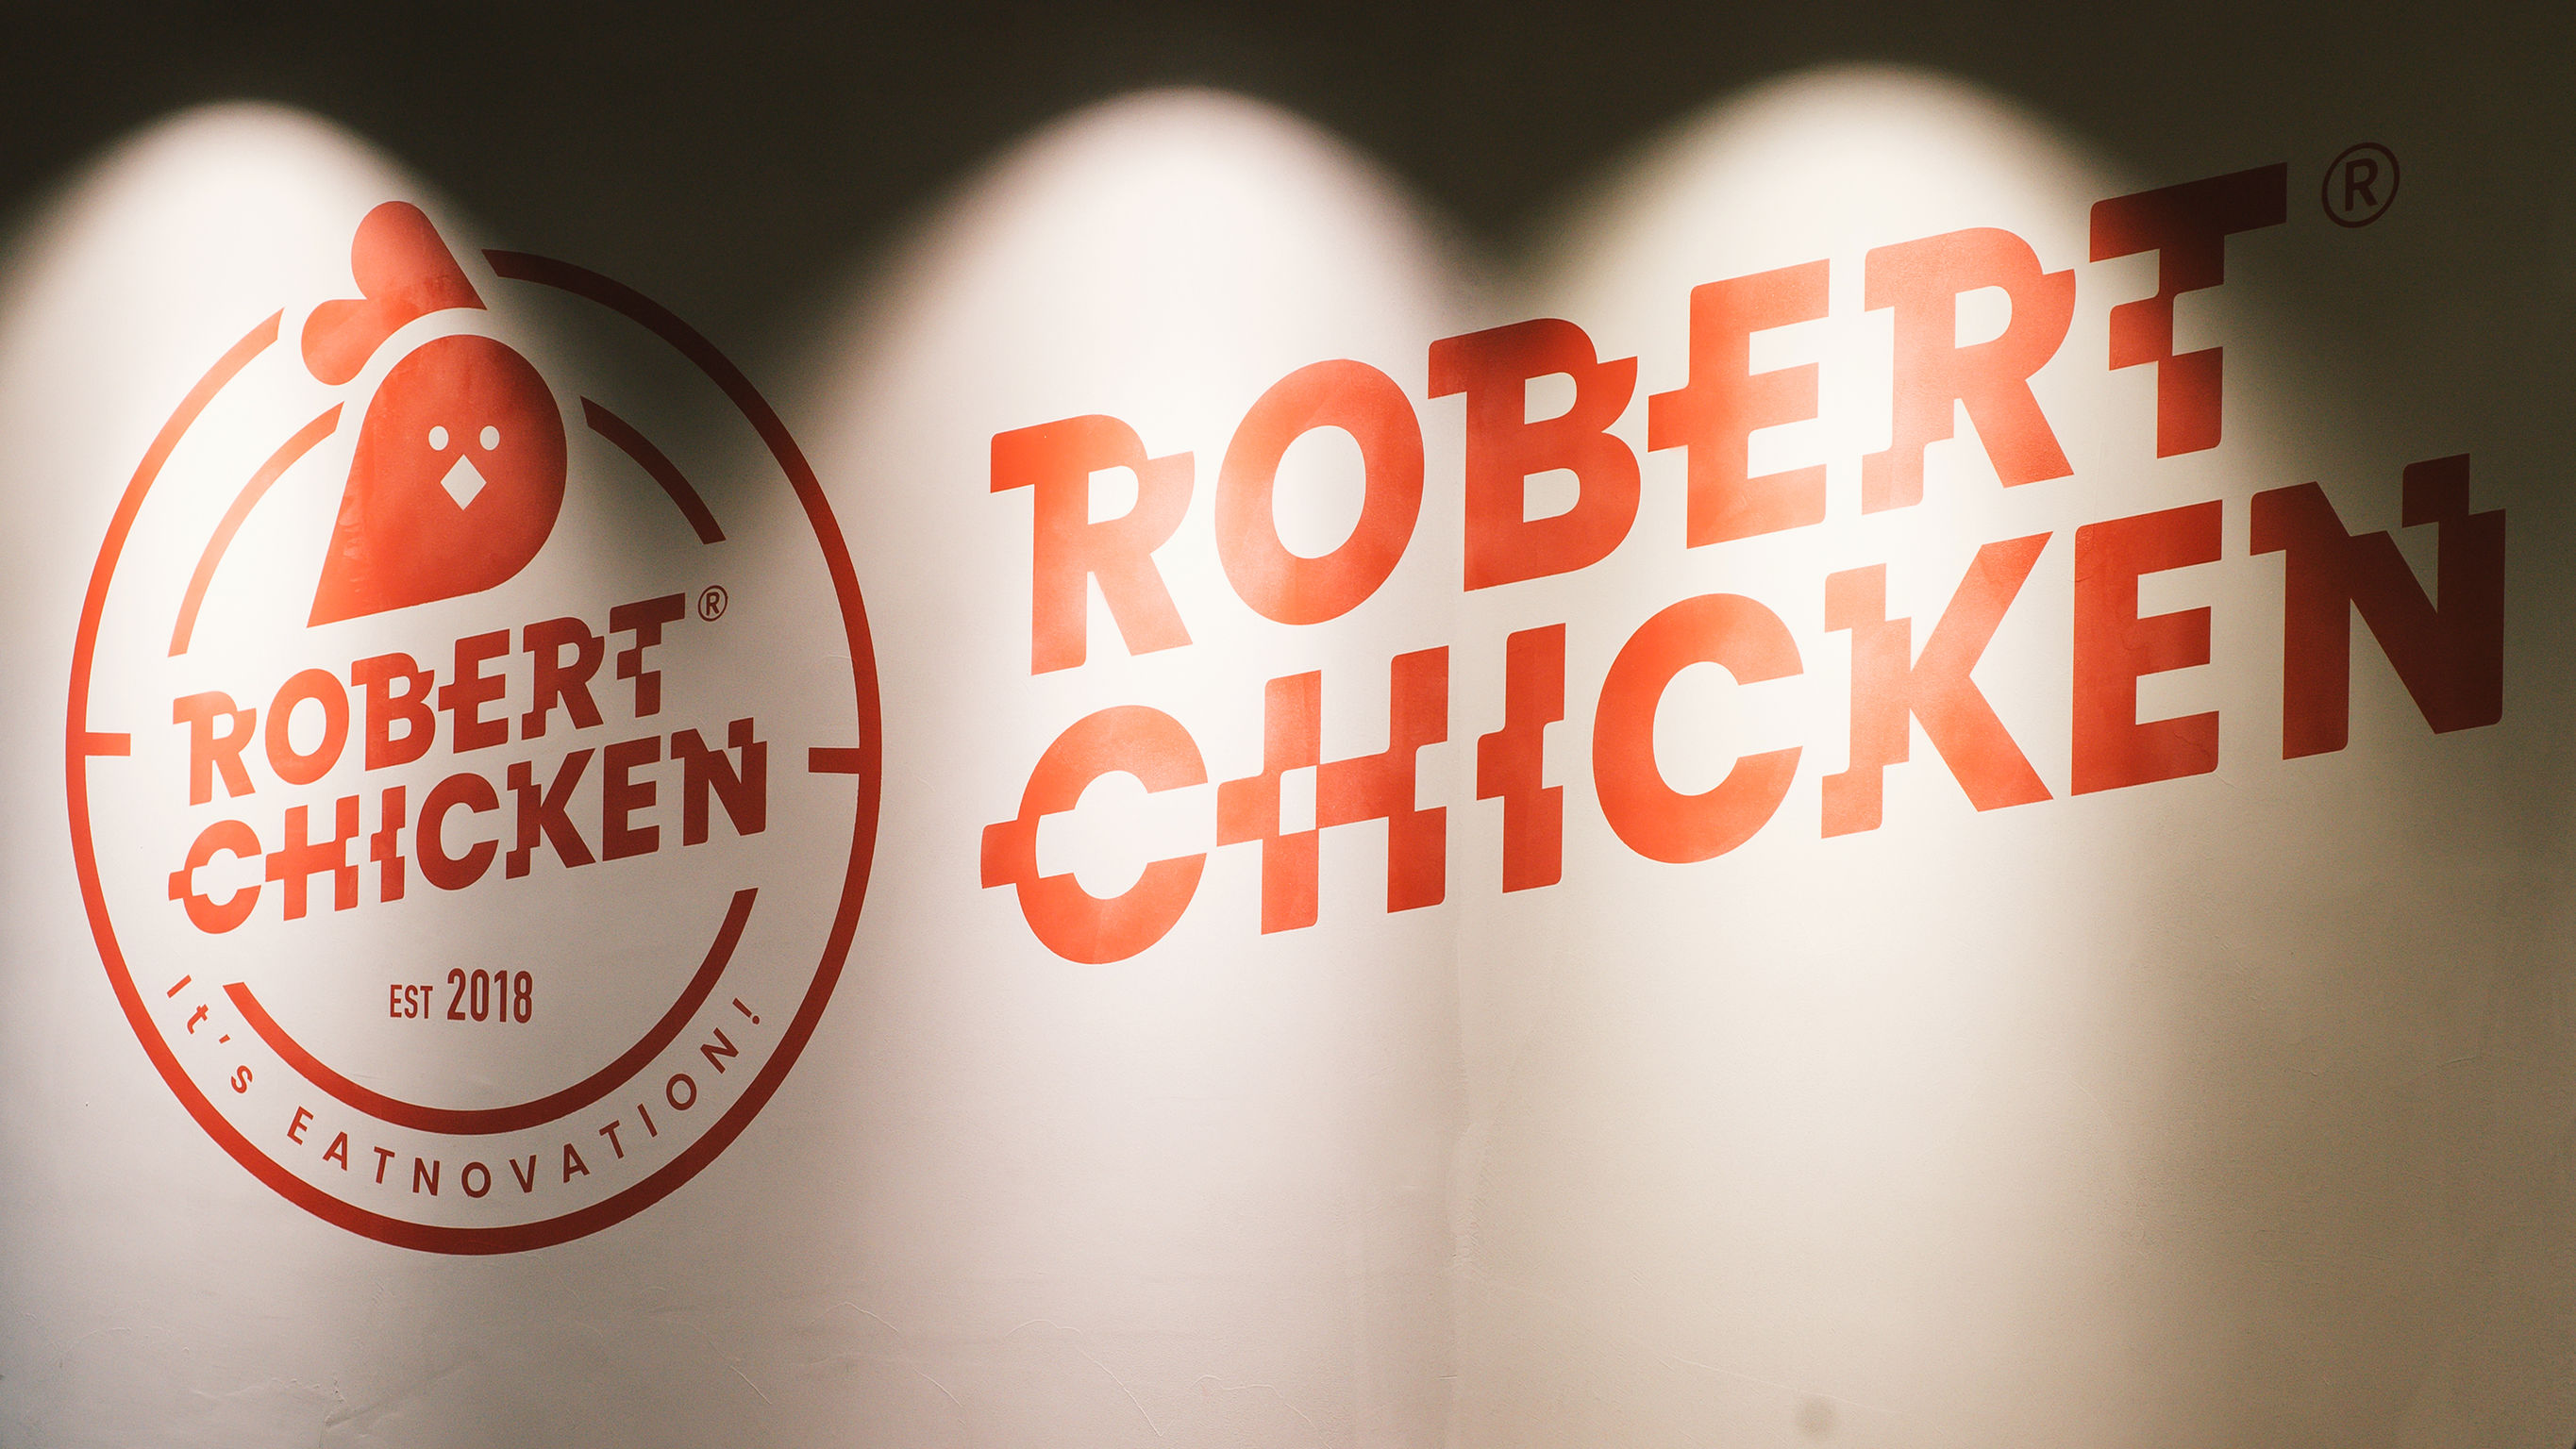 ROBERT CHICKEN - Brand Identity Design